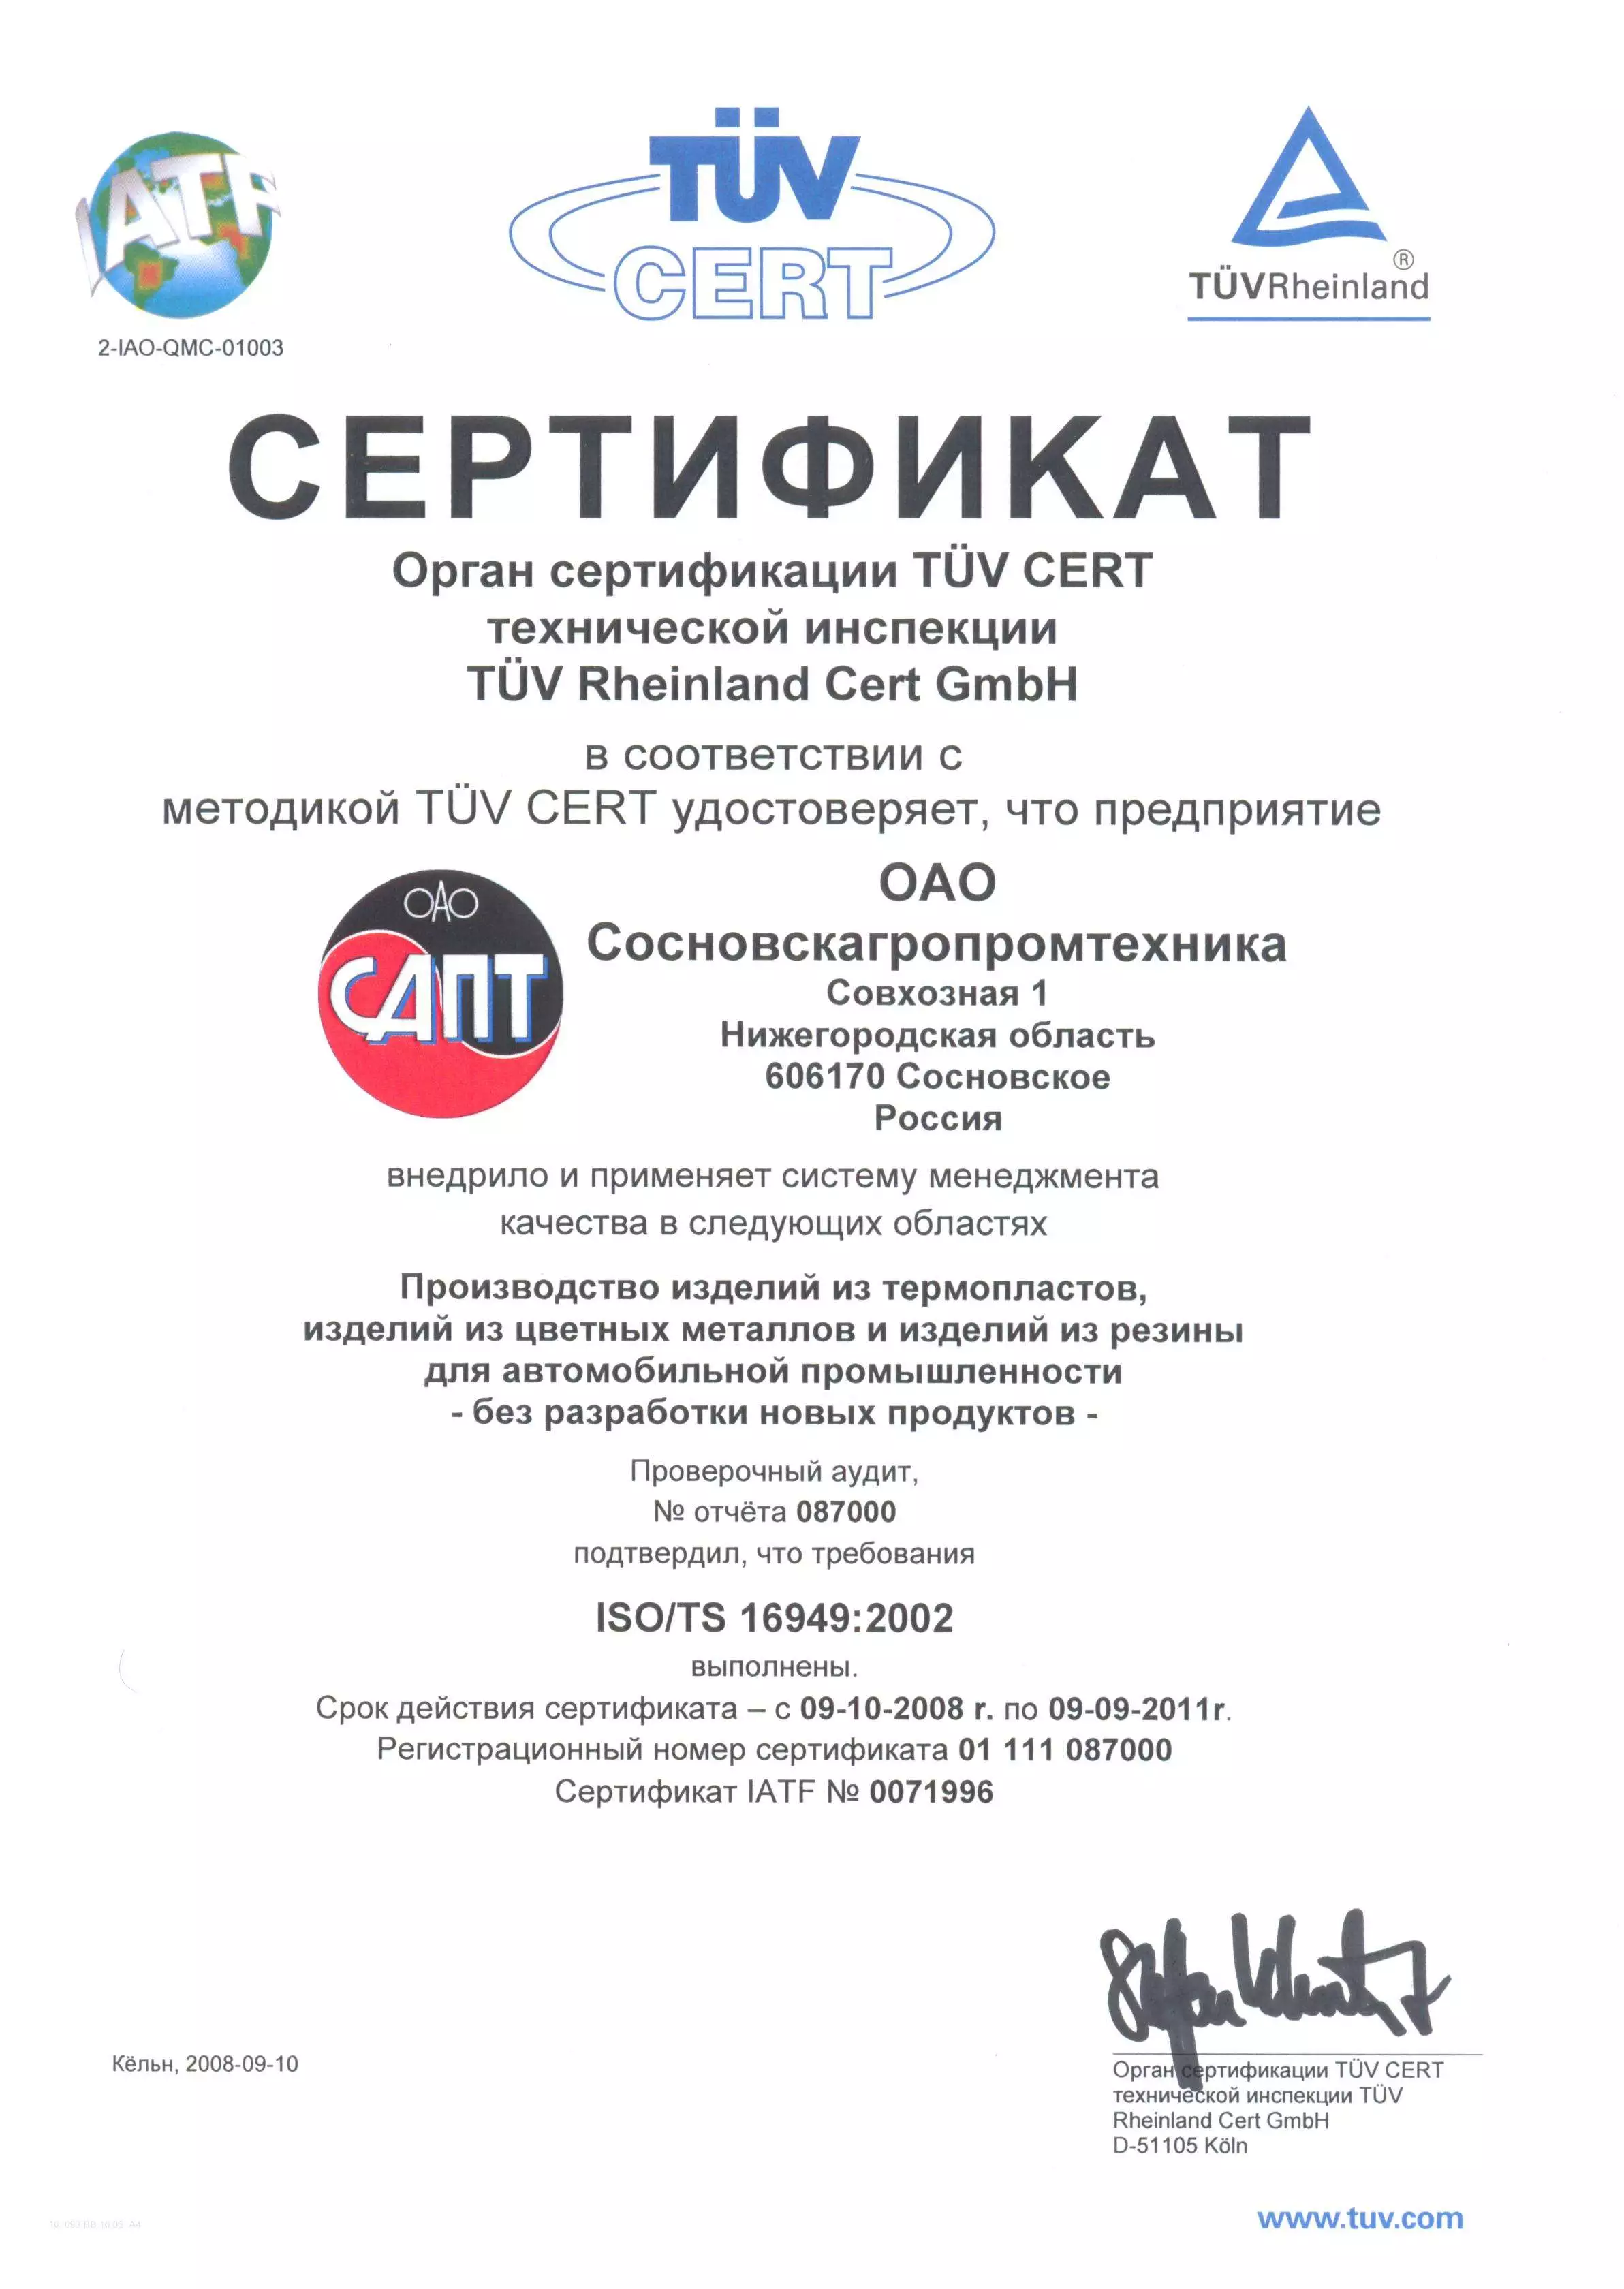 2008 год - Certification of the Quality Management System в АО Сосновскагропромтехника